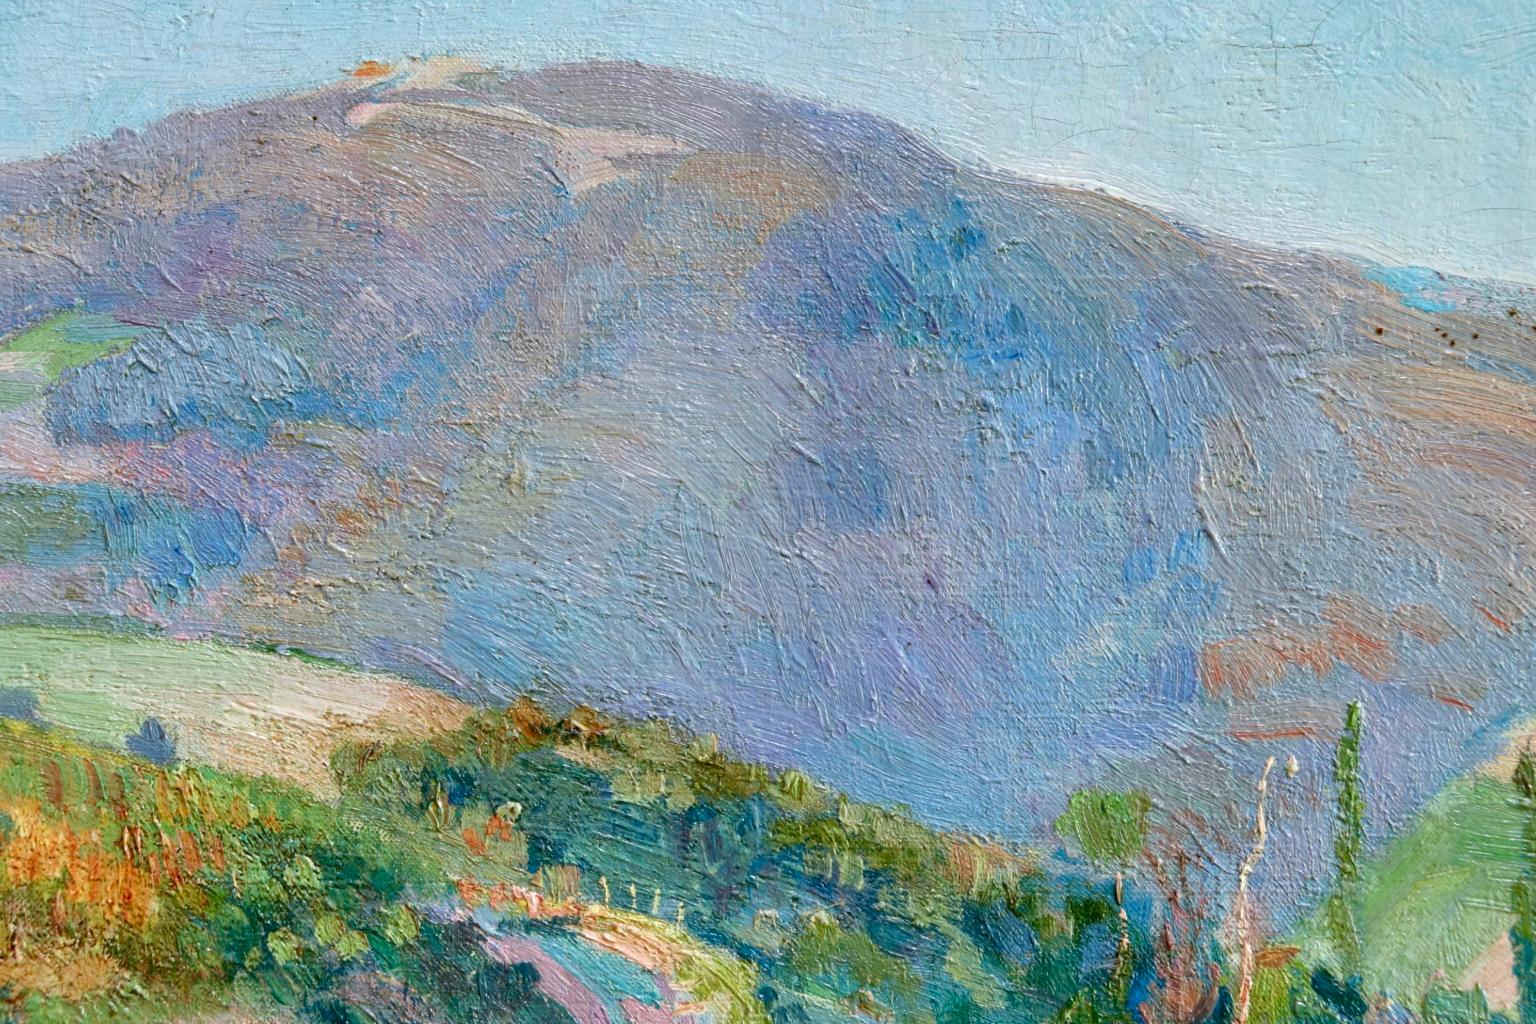 Donzy-le-Perthuis - Burgundy - Post Impressionist Oil, Landscape - H Petitjean 2